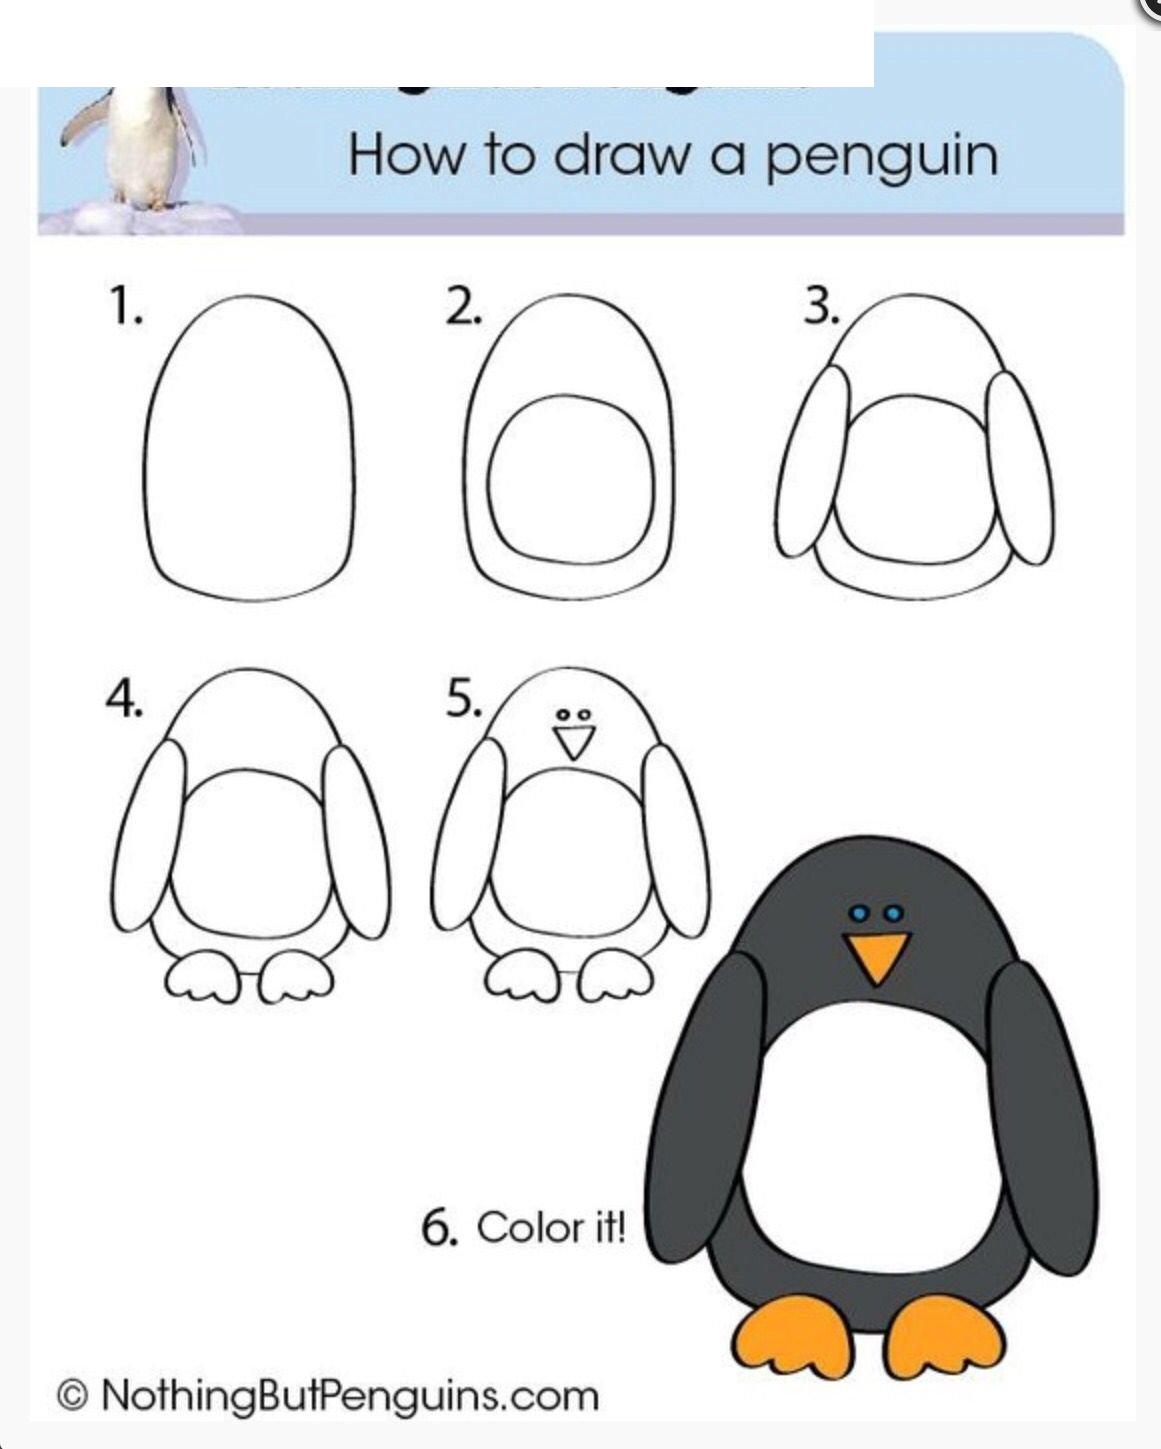 Jak narysować pingwina - instrukcje krok po kroku dla dzieci